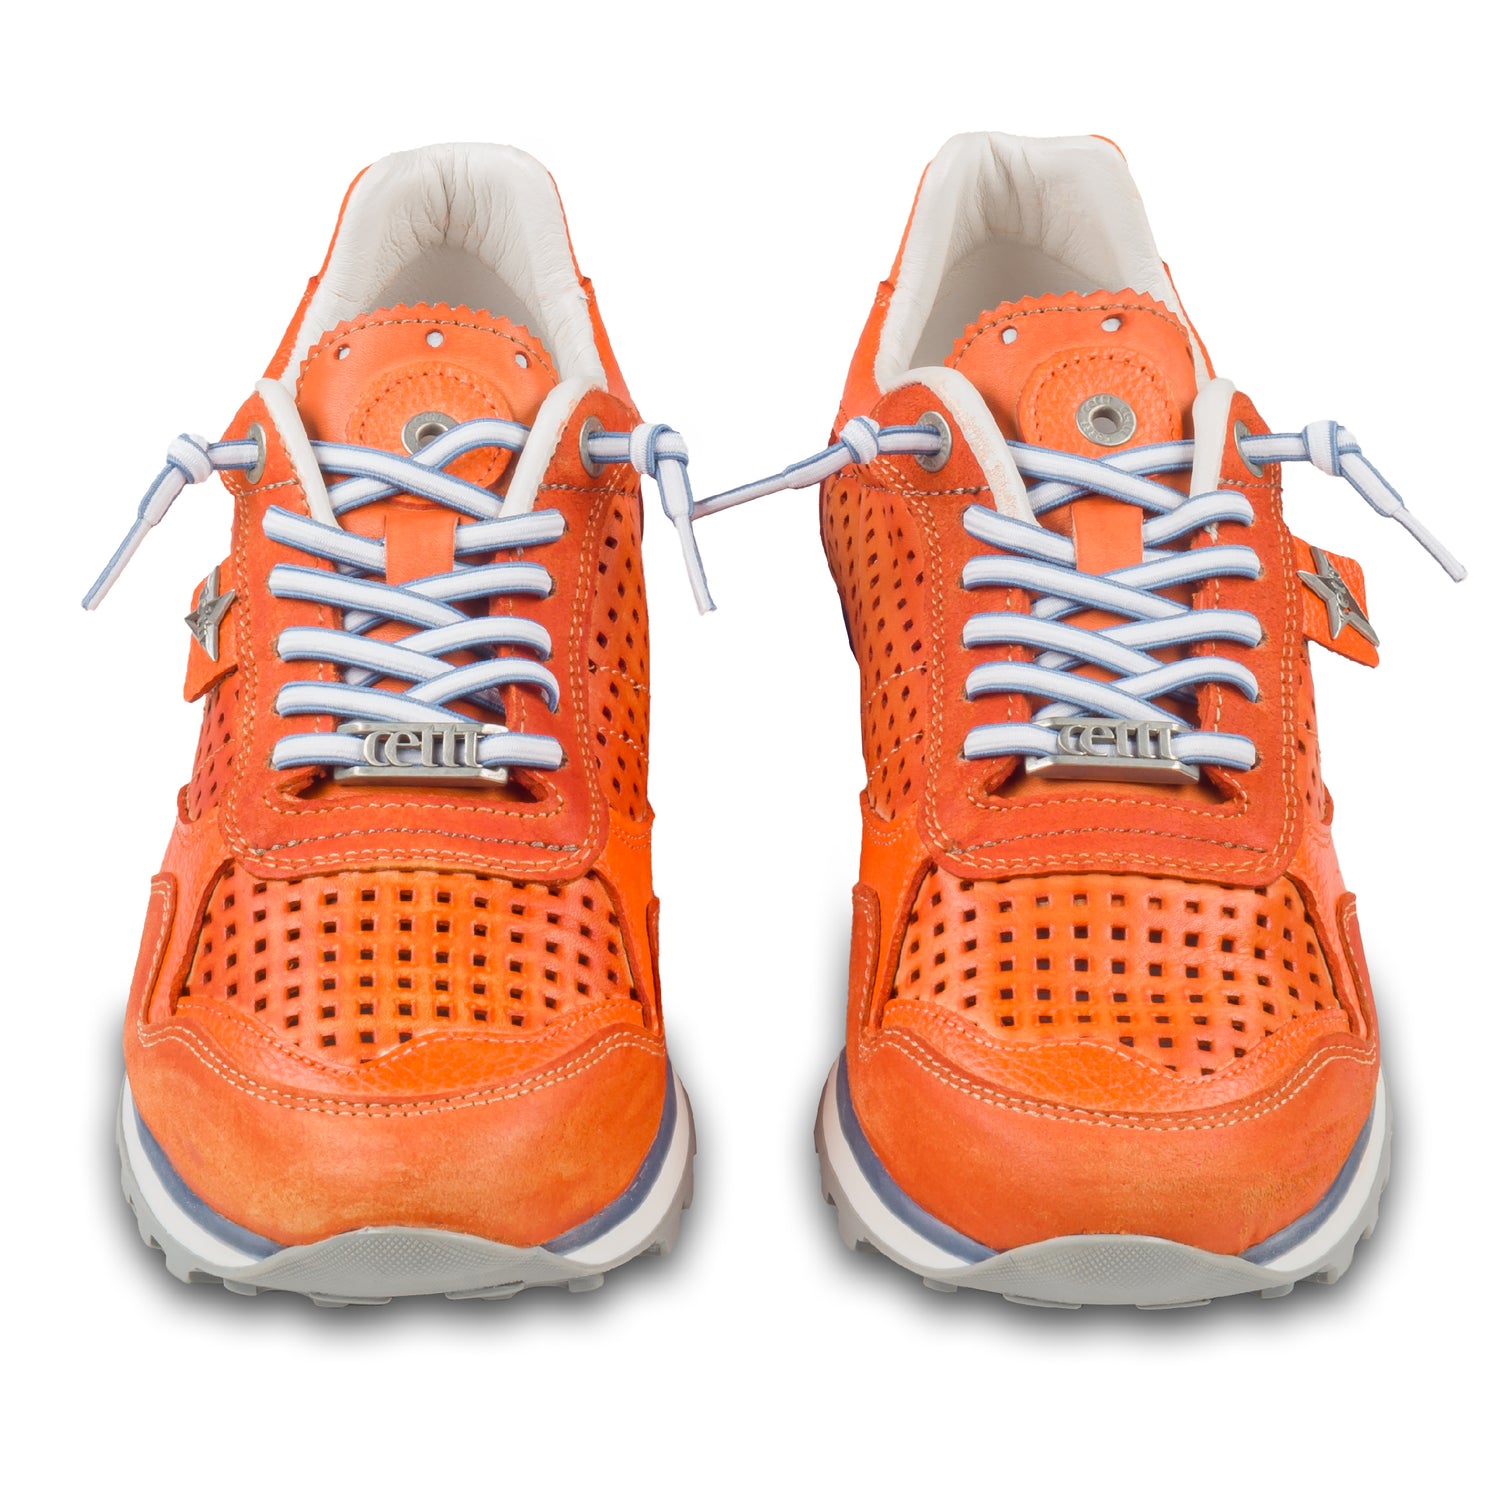 CETTI Herren Leder Sneaker, Modell „C848“ in orange (used tin ambar), Made in Spain. Ansicht der Ferse und Sohlenunterseite. Paarweise Ansicht von vorne. 